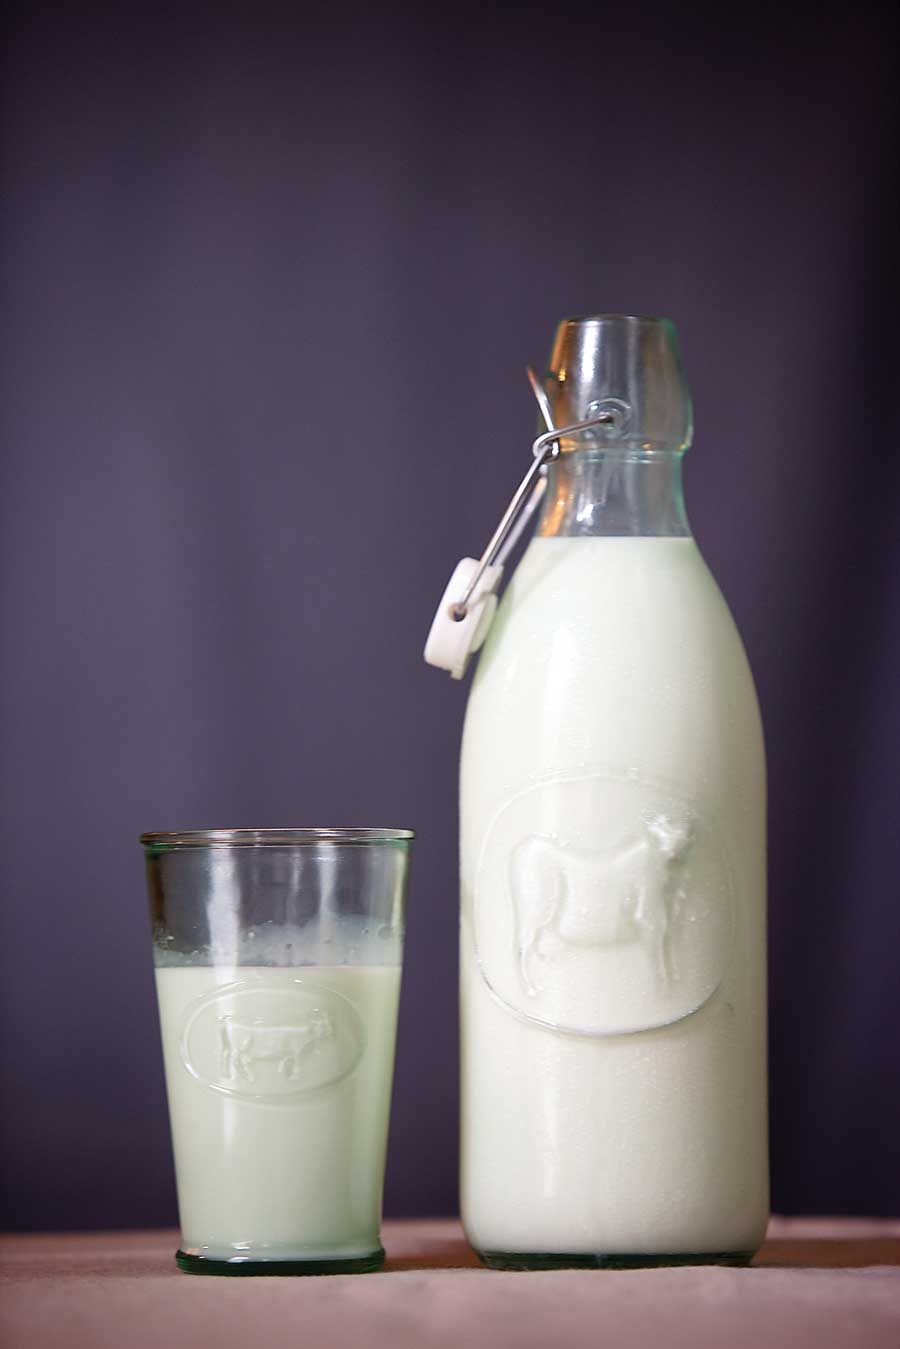 Có những loại sữa tách kem hay sữa không béo sẽ rất tốt cho những cơ thể cần giảm cân